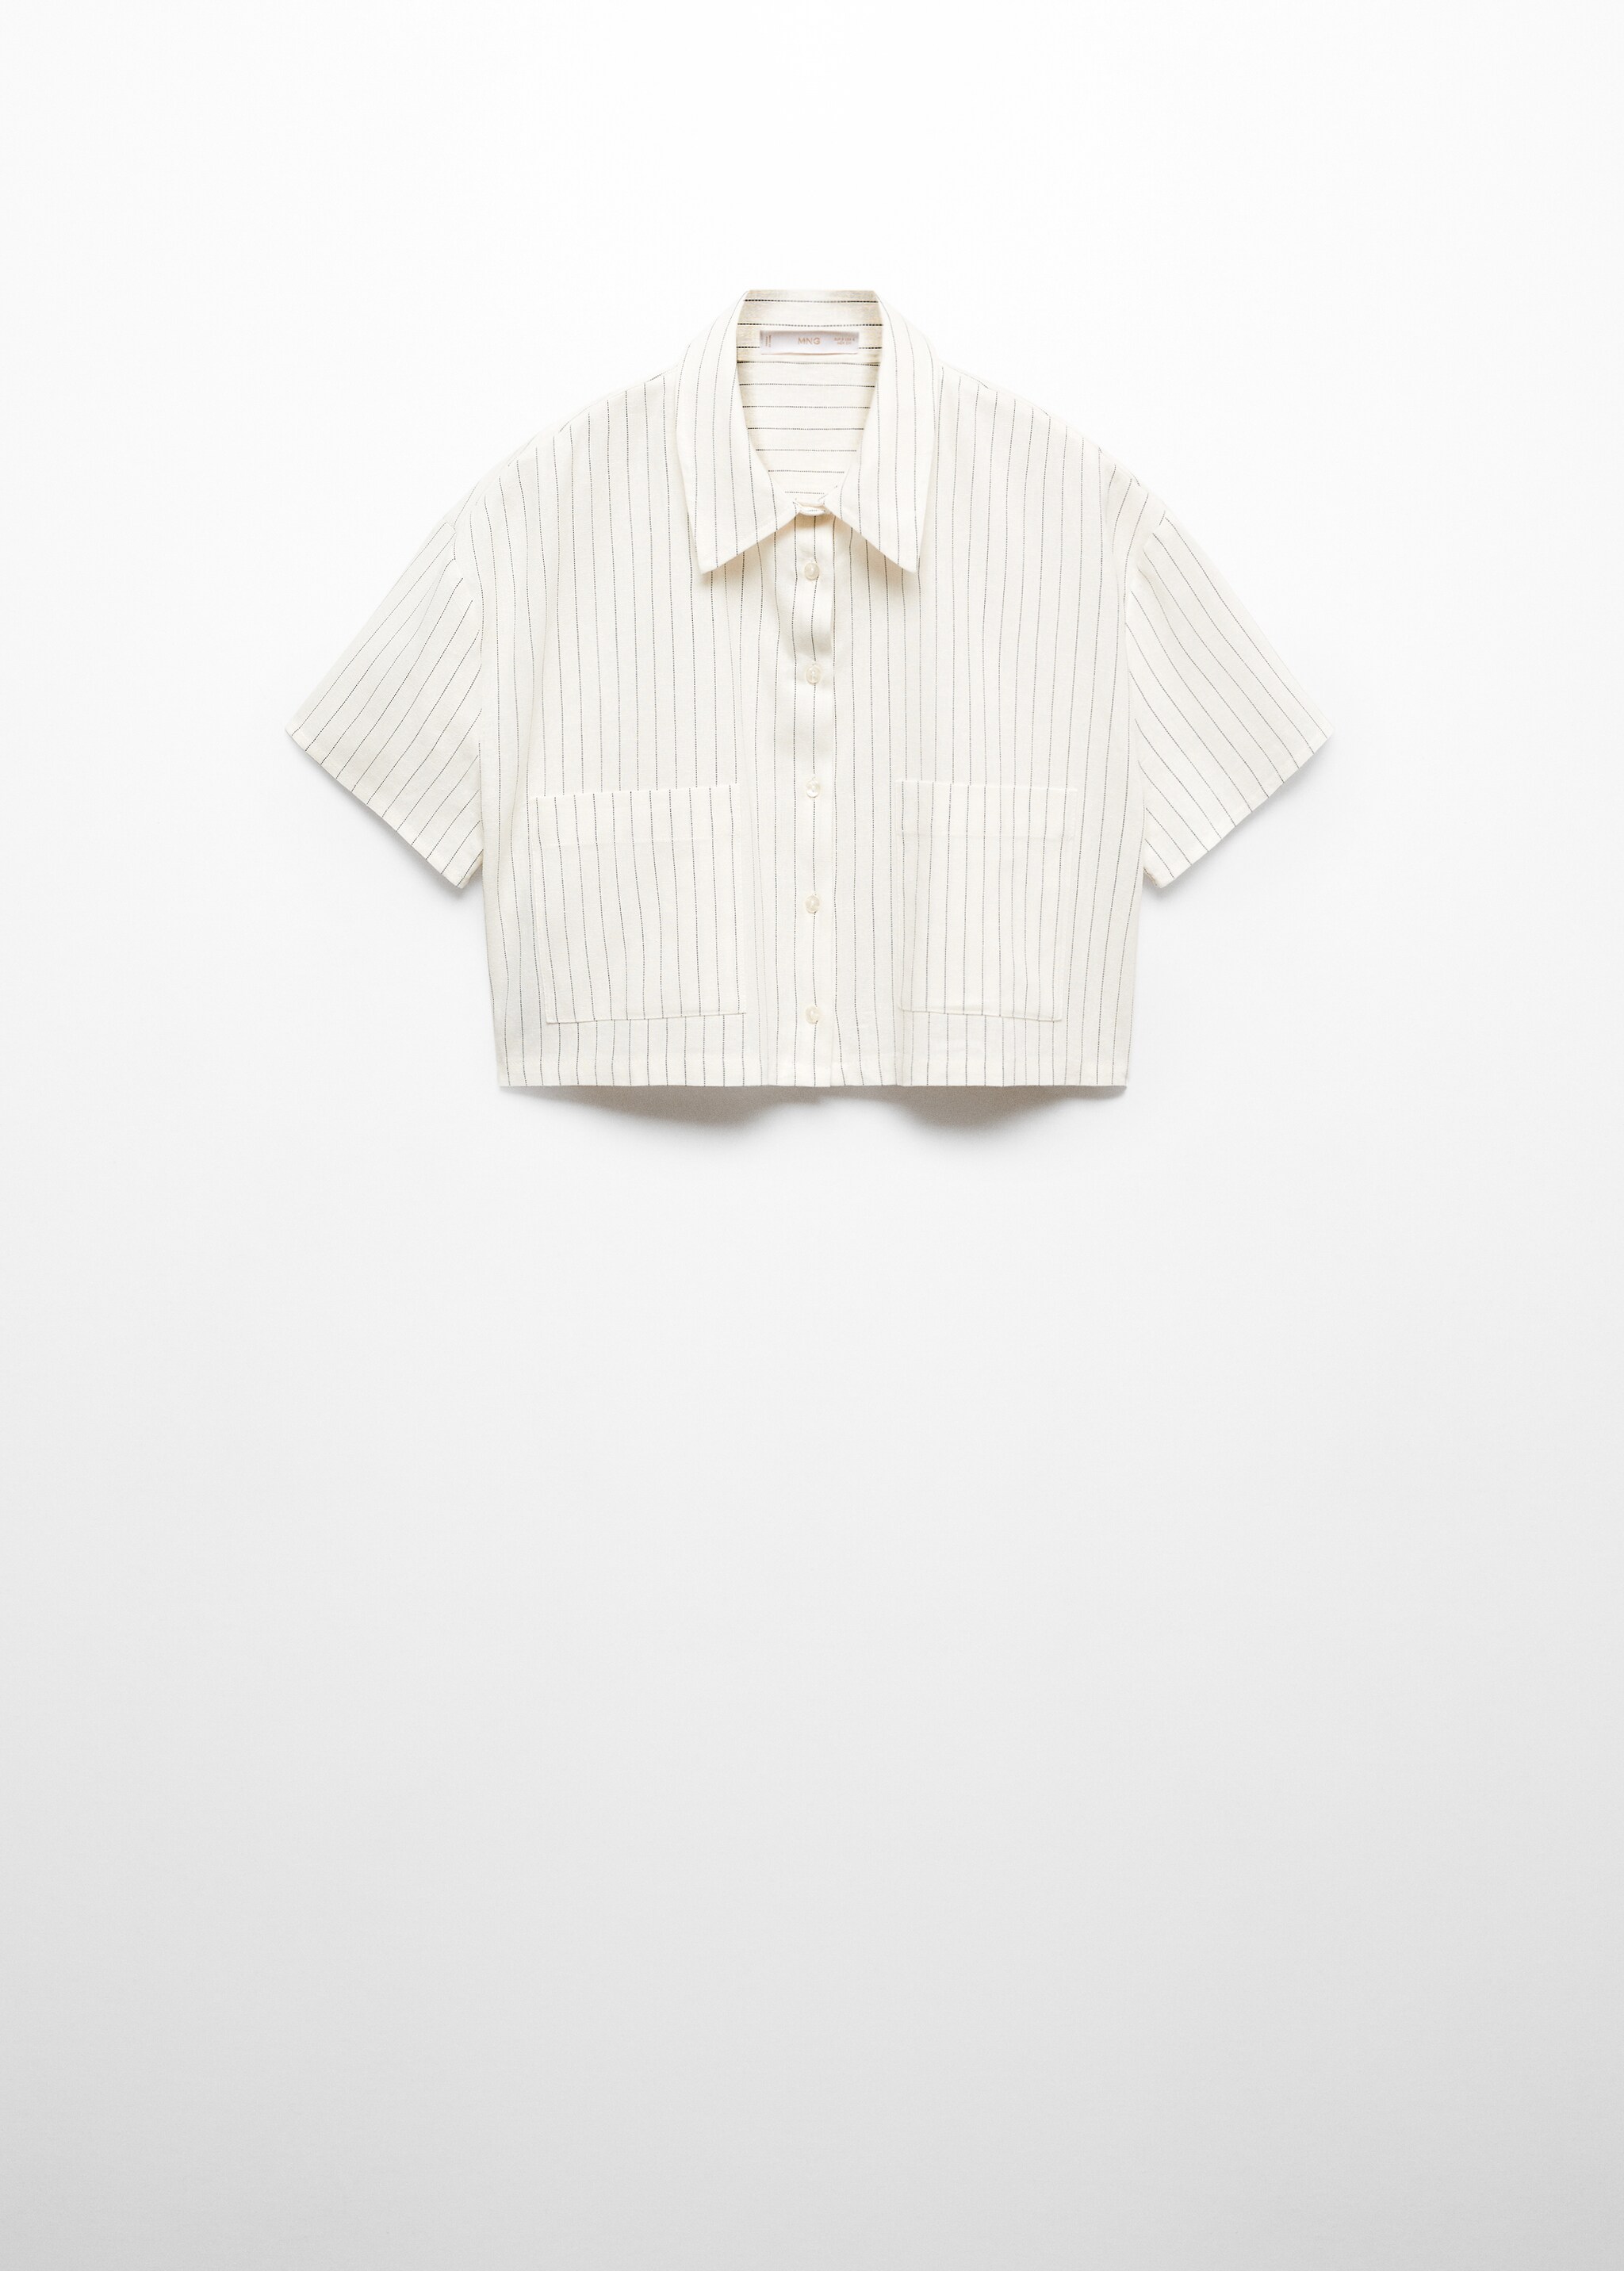 Camisa crop lino - Artículo sin modelo